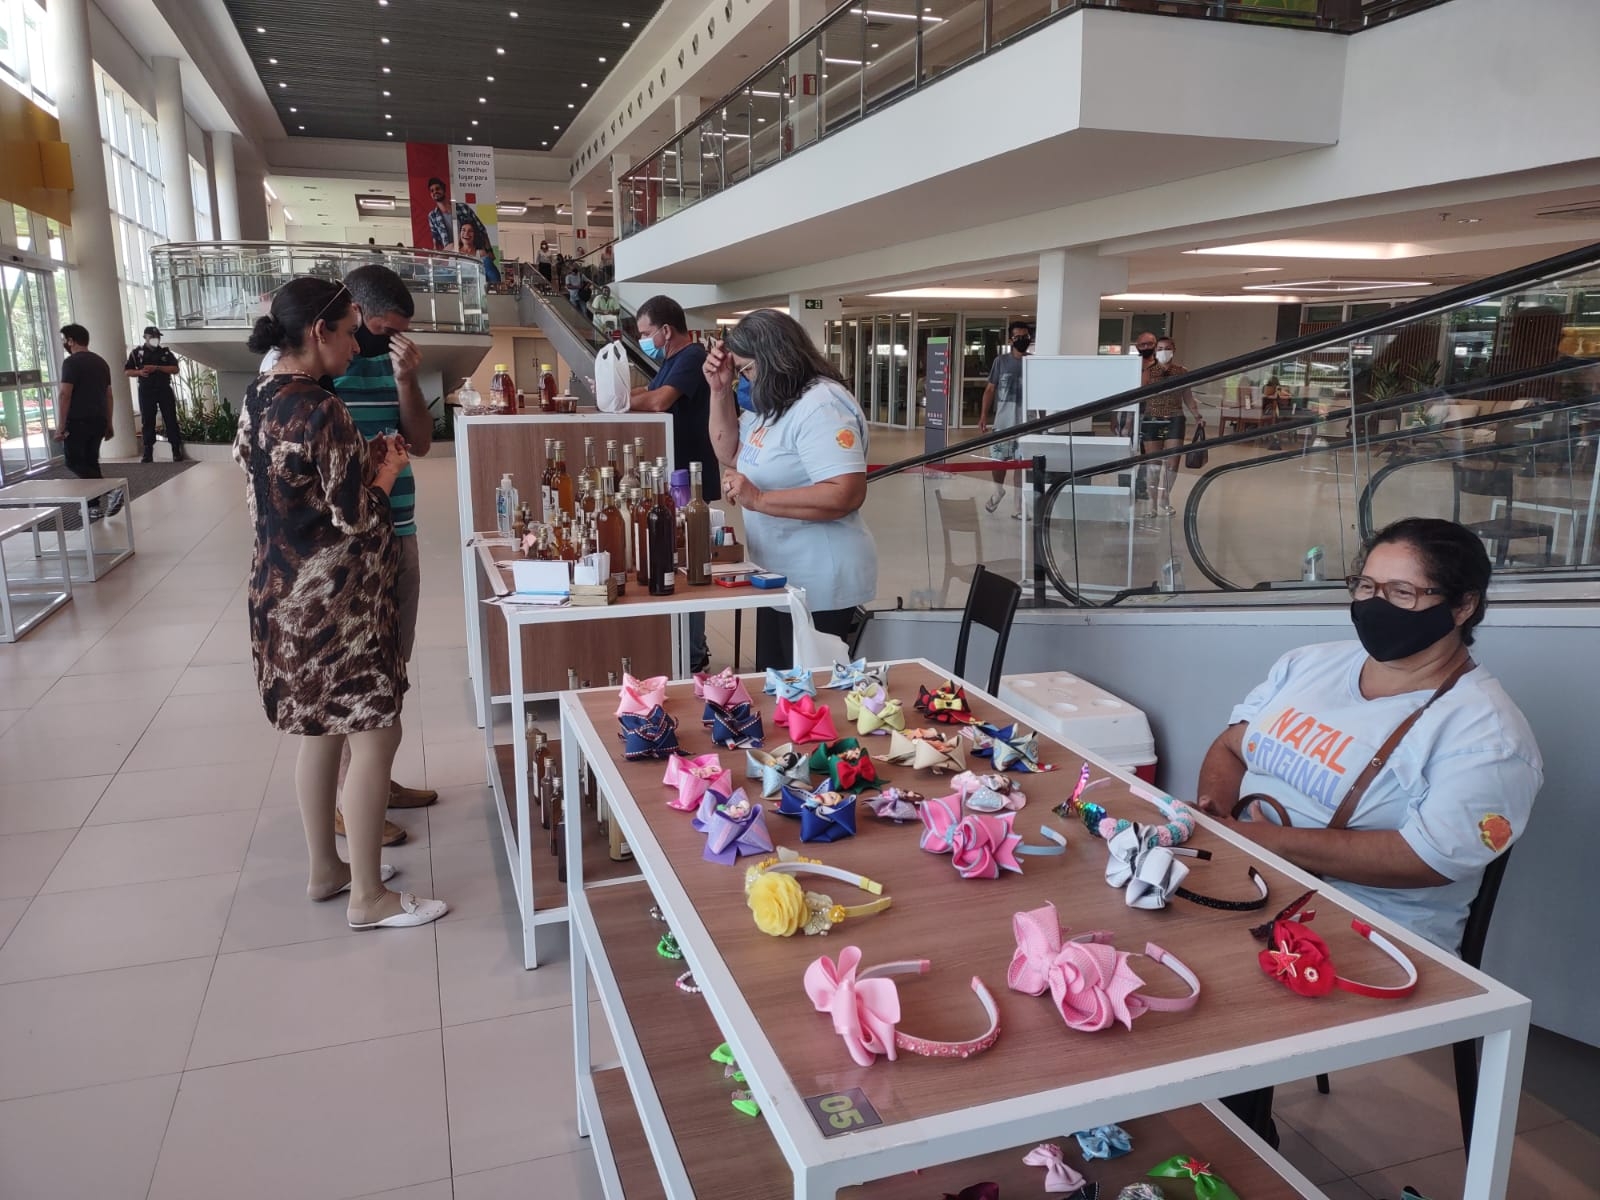 Artesãos natalenses ganham espaço para exposição na loja Ferreira Costa 